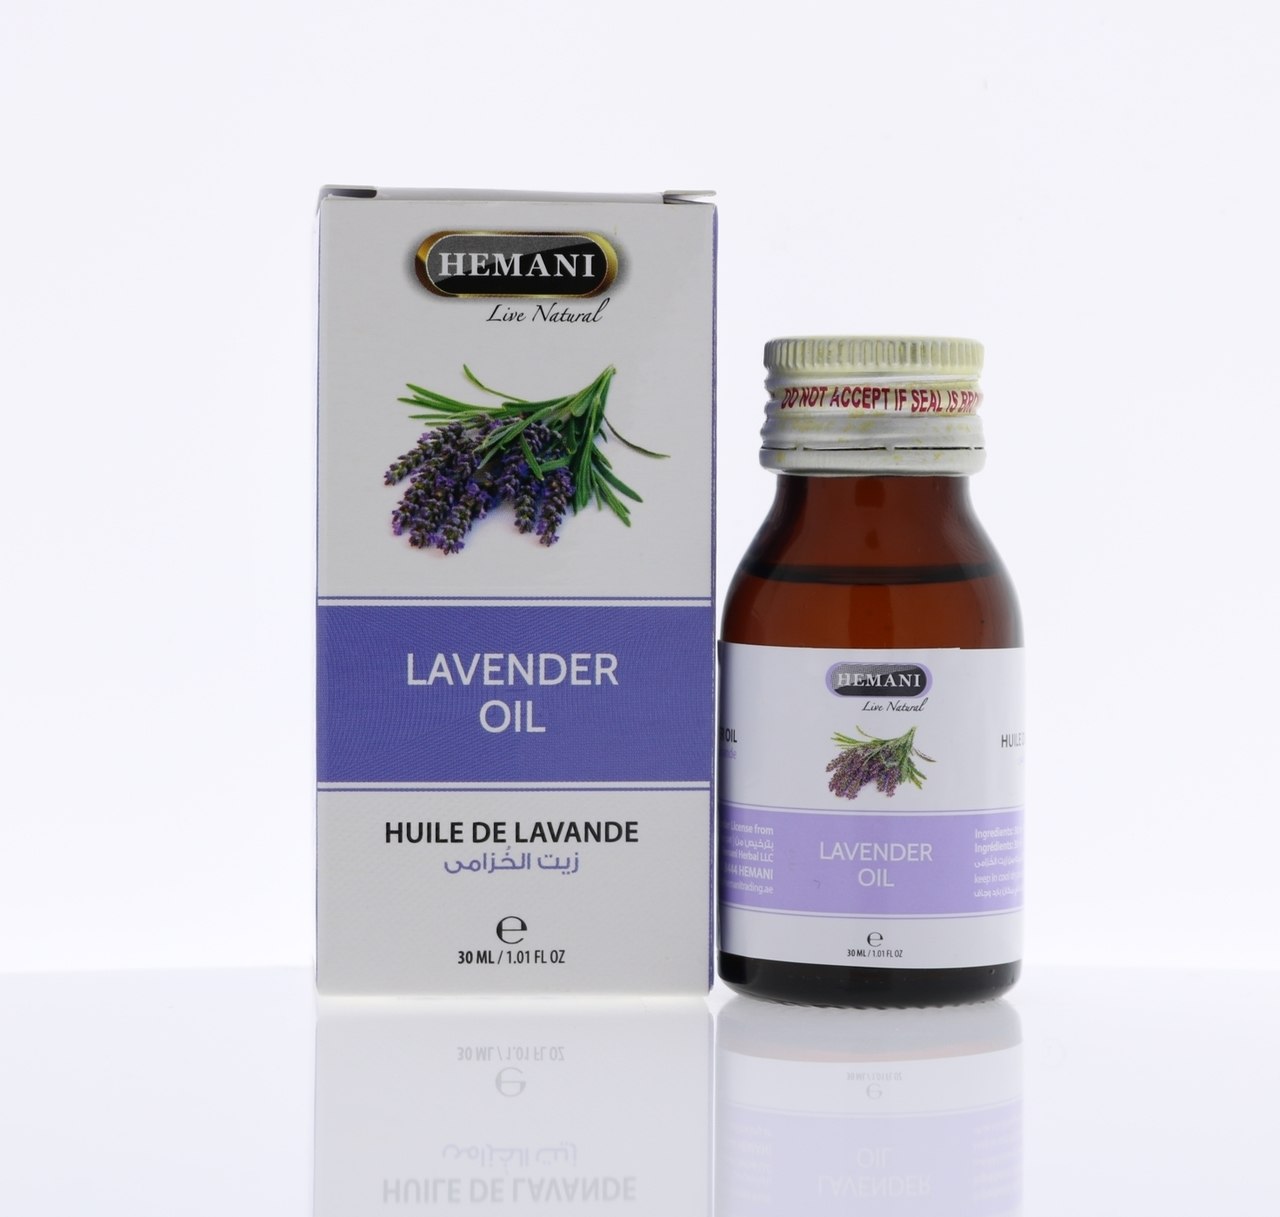 Vaj Levander - Levander Oil